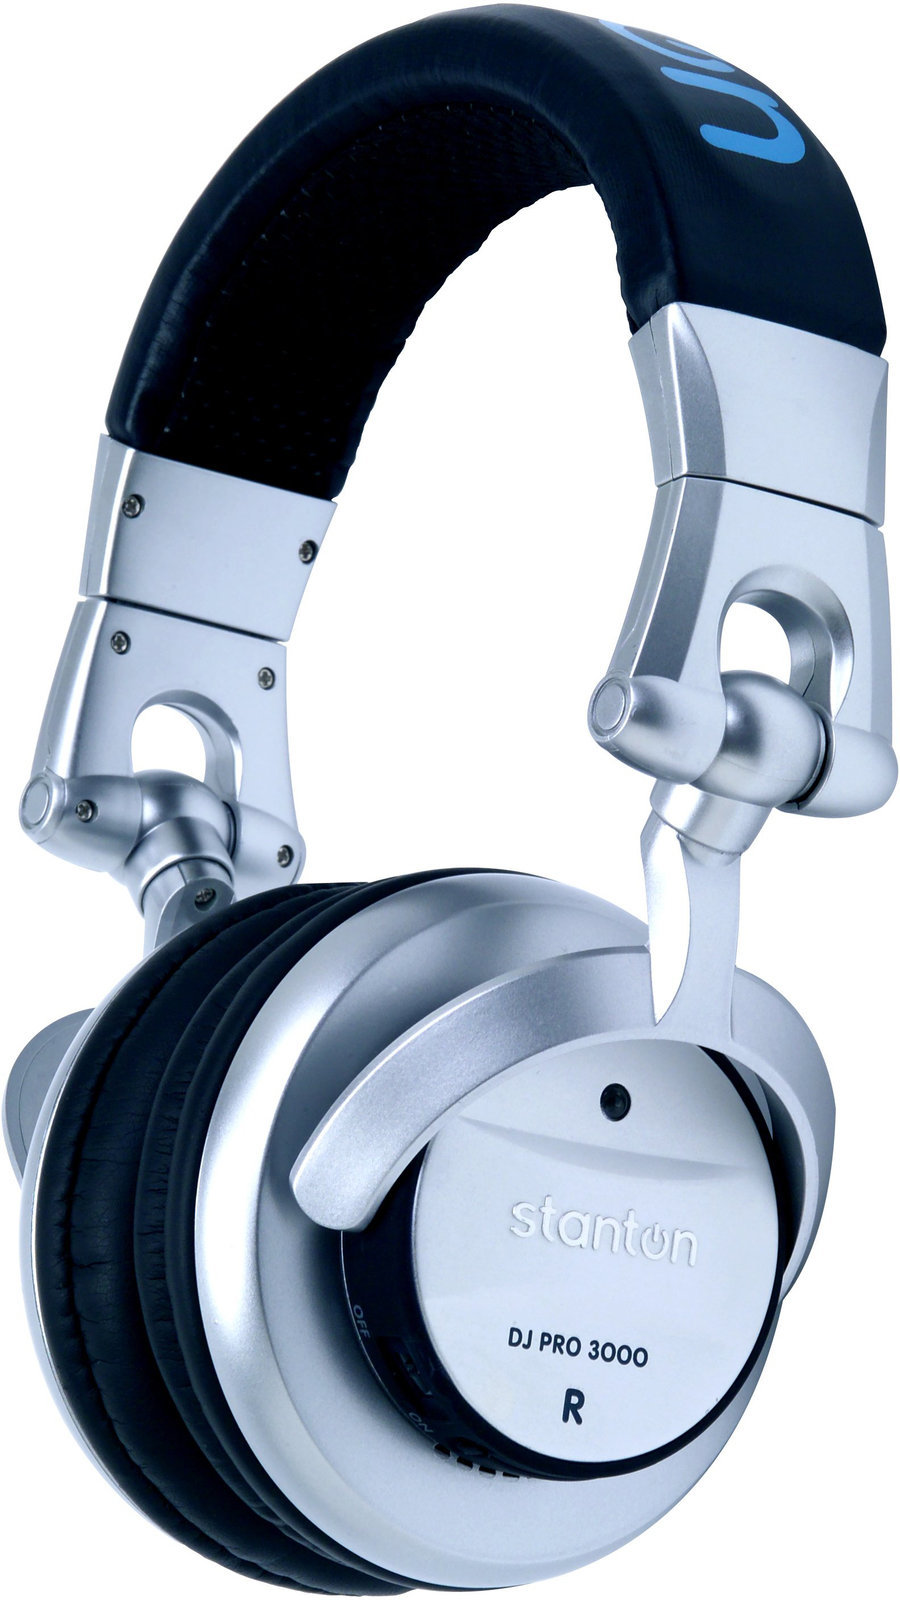 DJ Headphone Stanton DJ Pro 3000